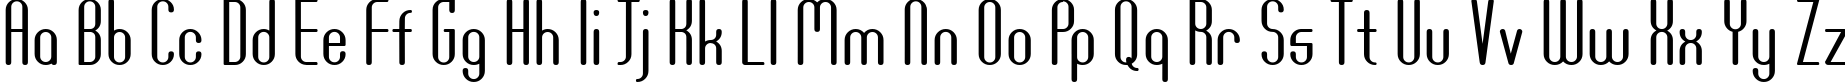 Пример написания английского алфавита шрифтом DF667  Plastic Jesus